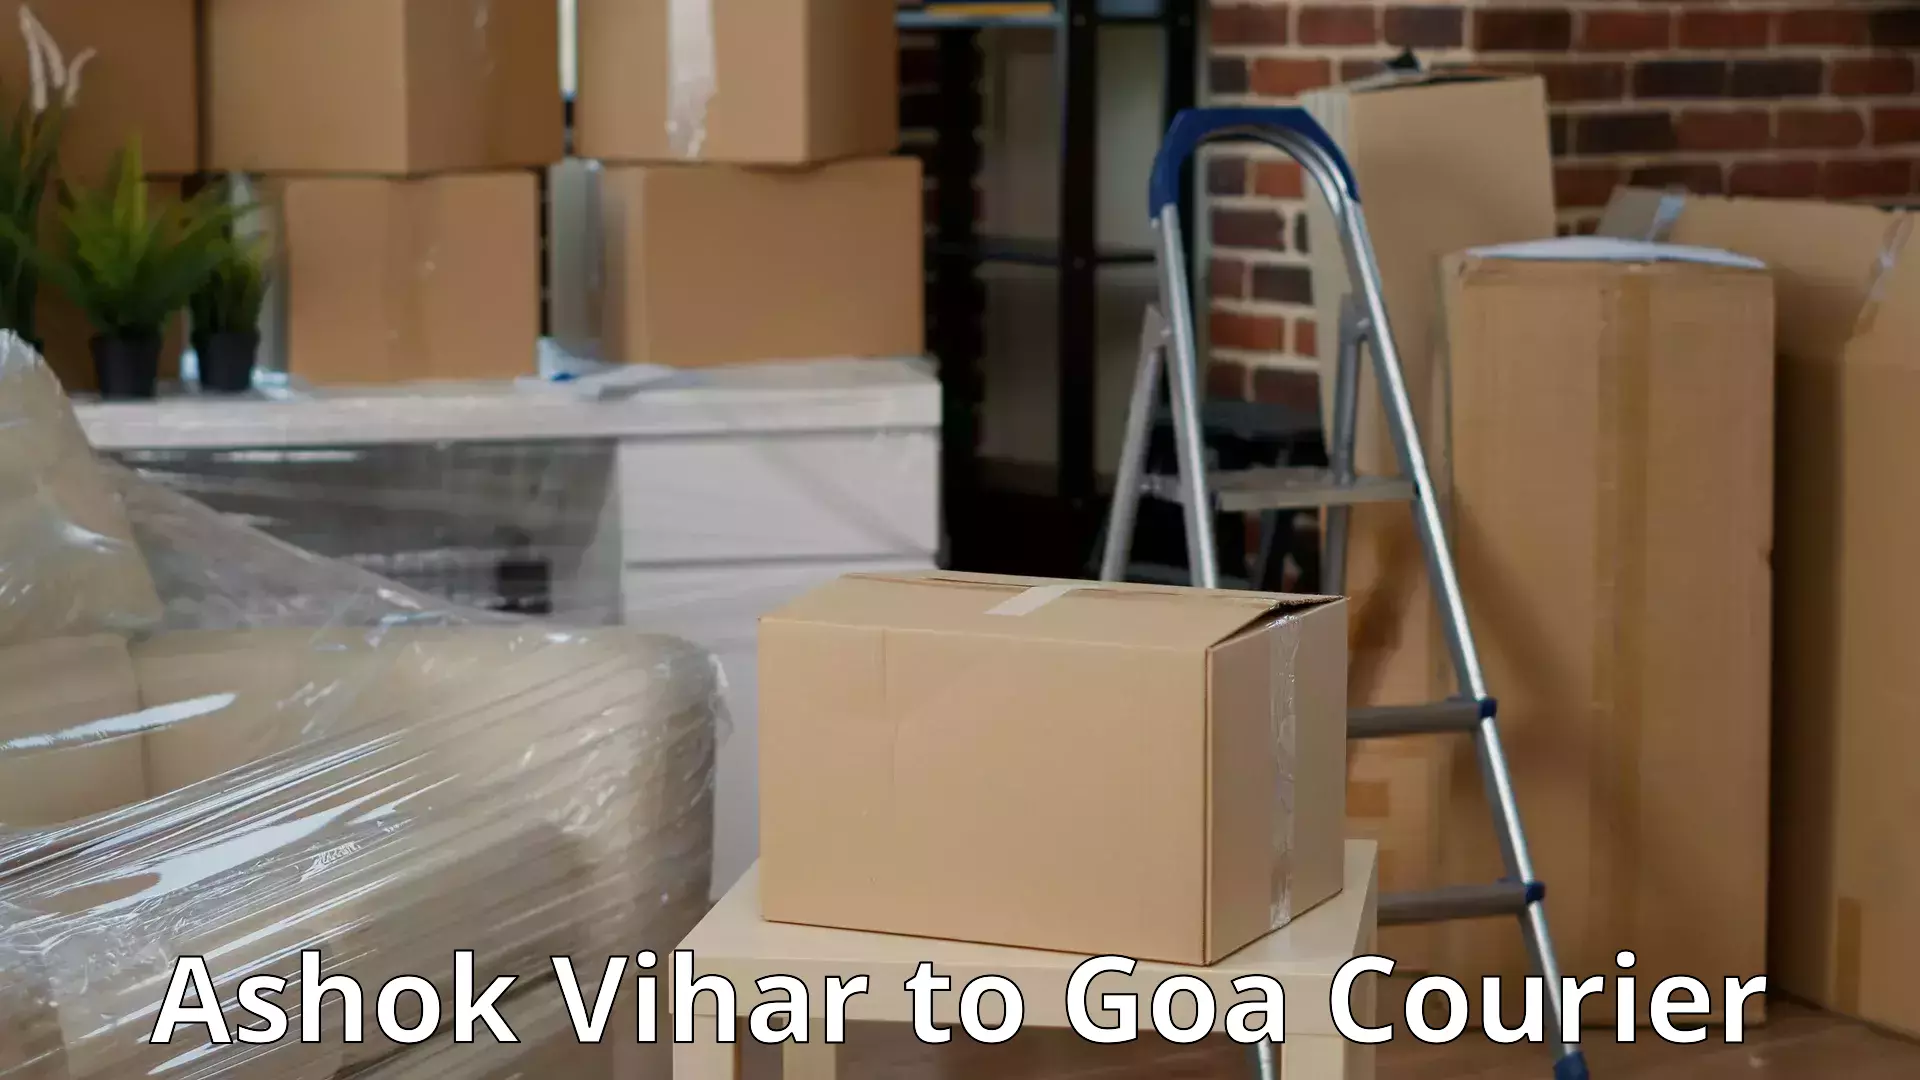 Efficient household moving Ashok Vihar to Vasco da Gama